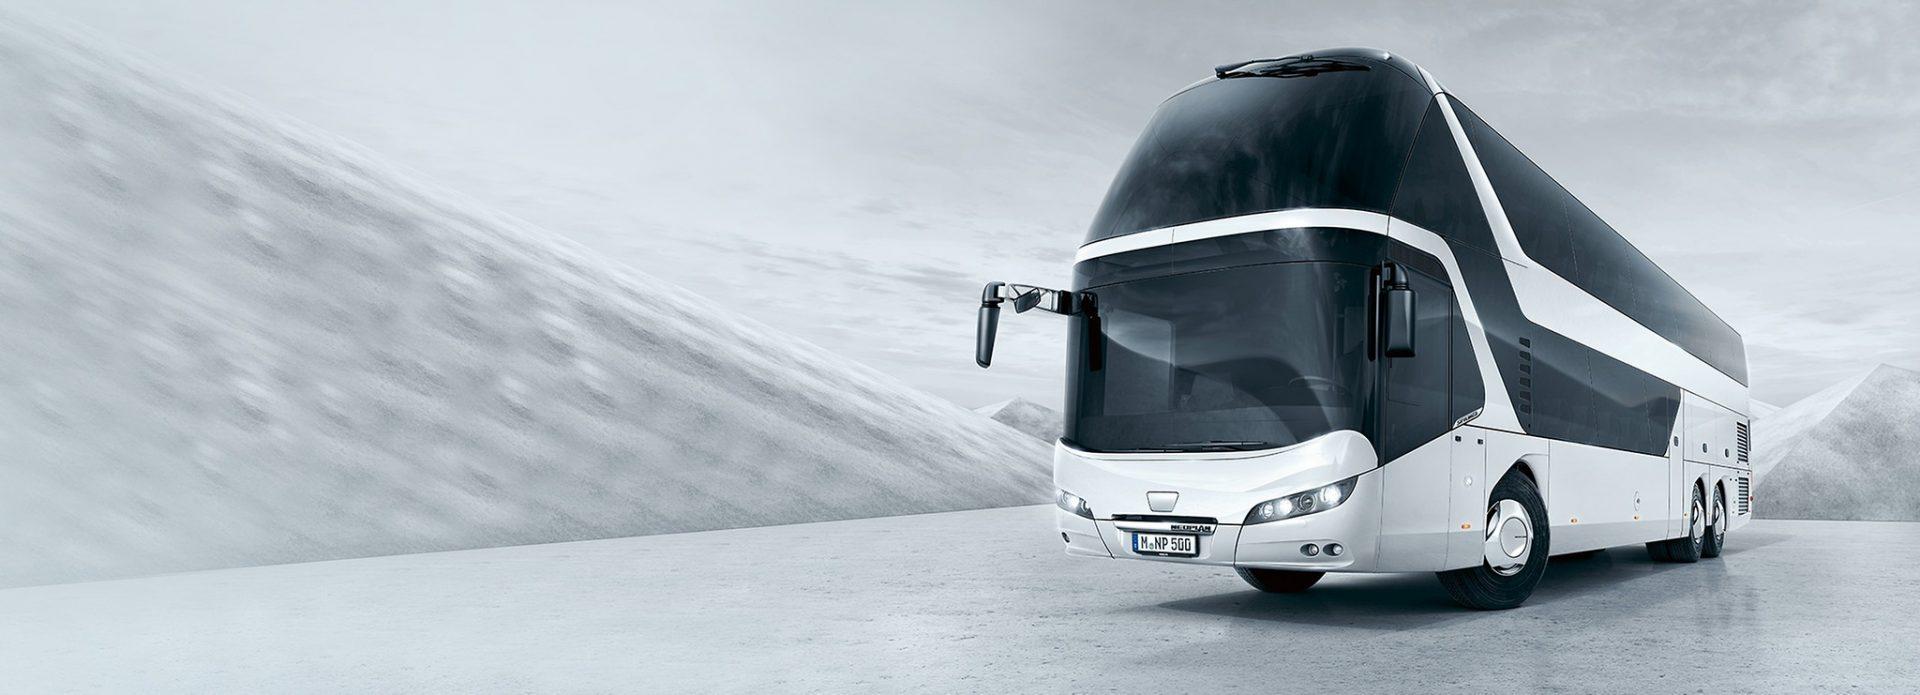 NEOPLAN Skyliner - Двухэтажный автобус класса люкс для ярких впечатлений от поездки